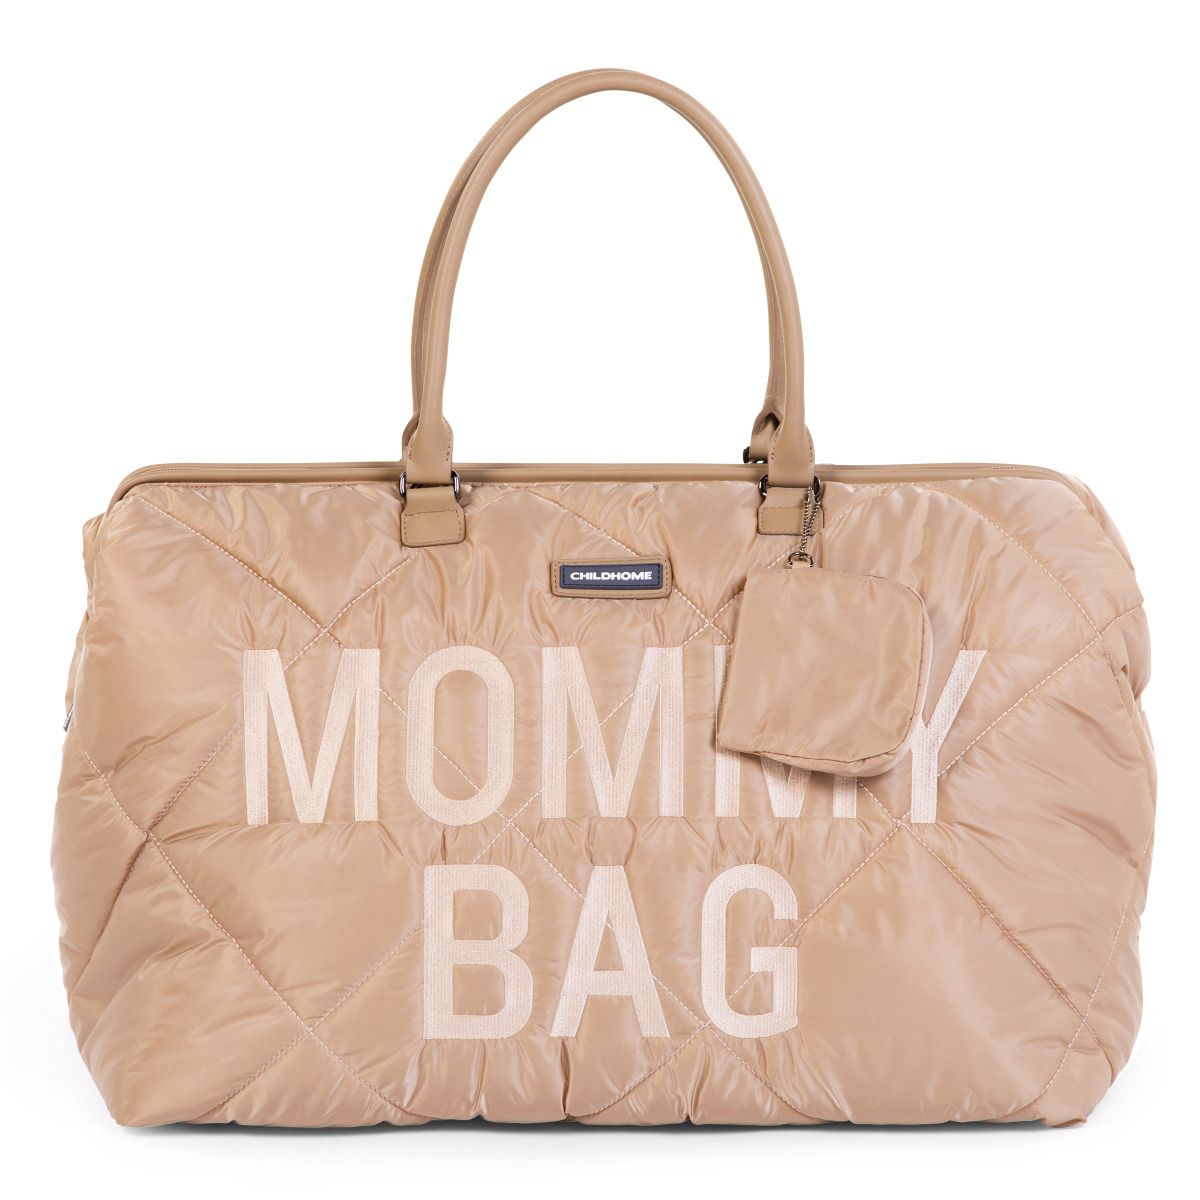 Сумка Childhome Mommy bag, дутая, бежевая (CWMBBPBE) - фото 7